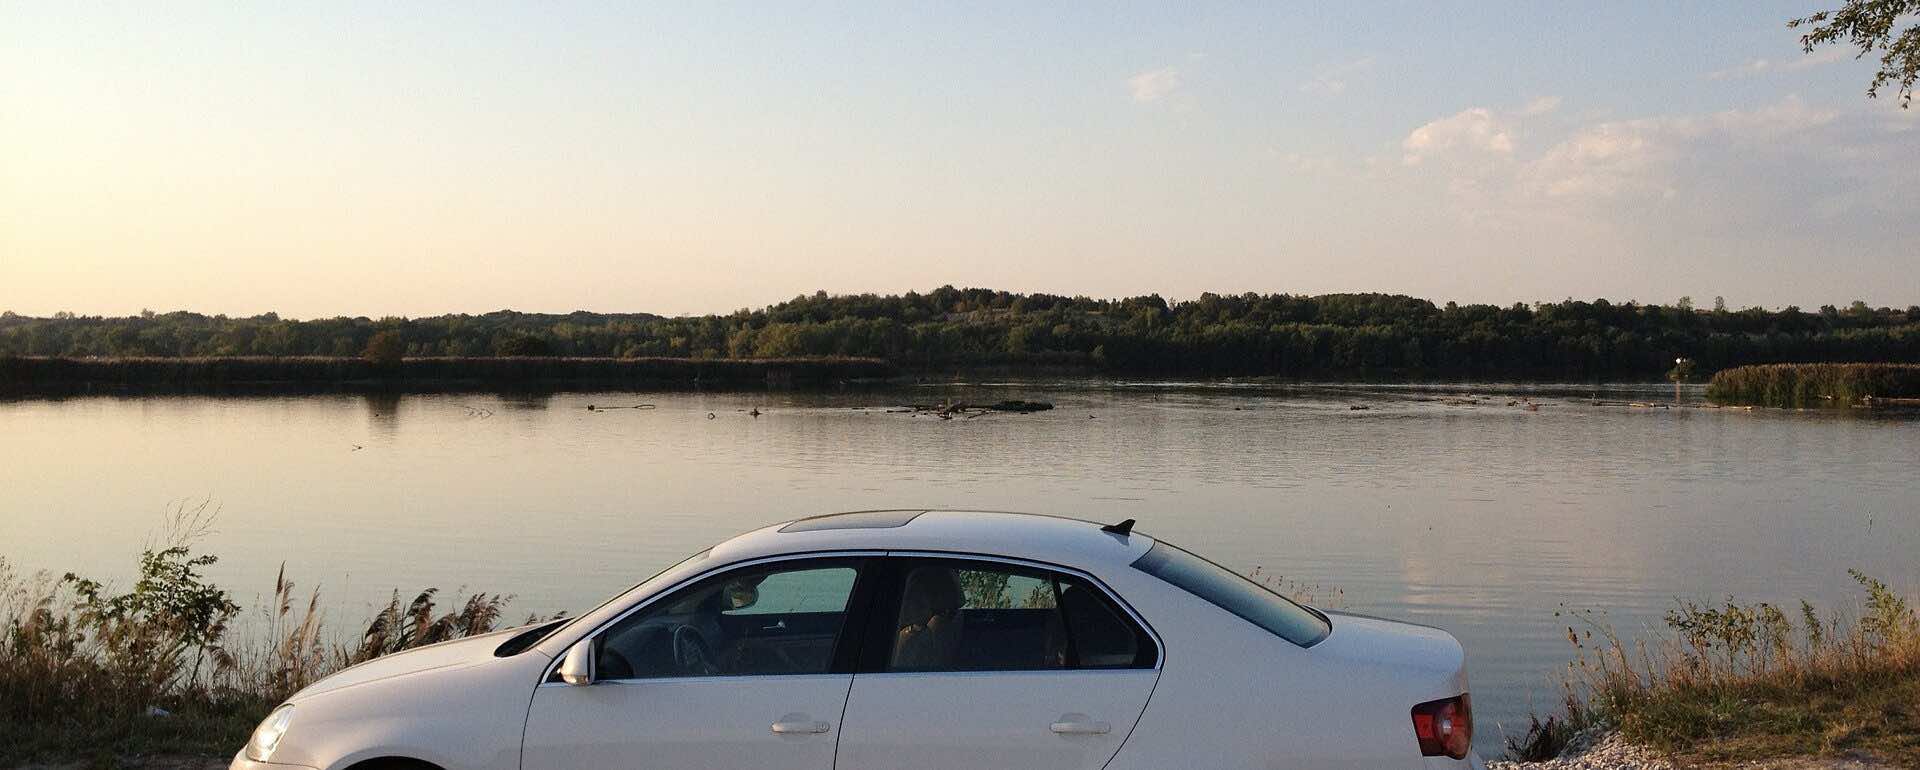 Jetta estacionado em uma lagoa